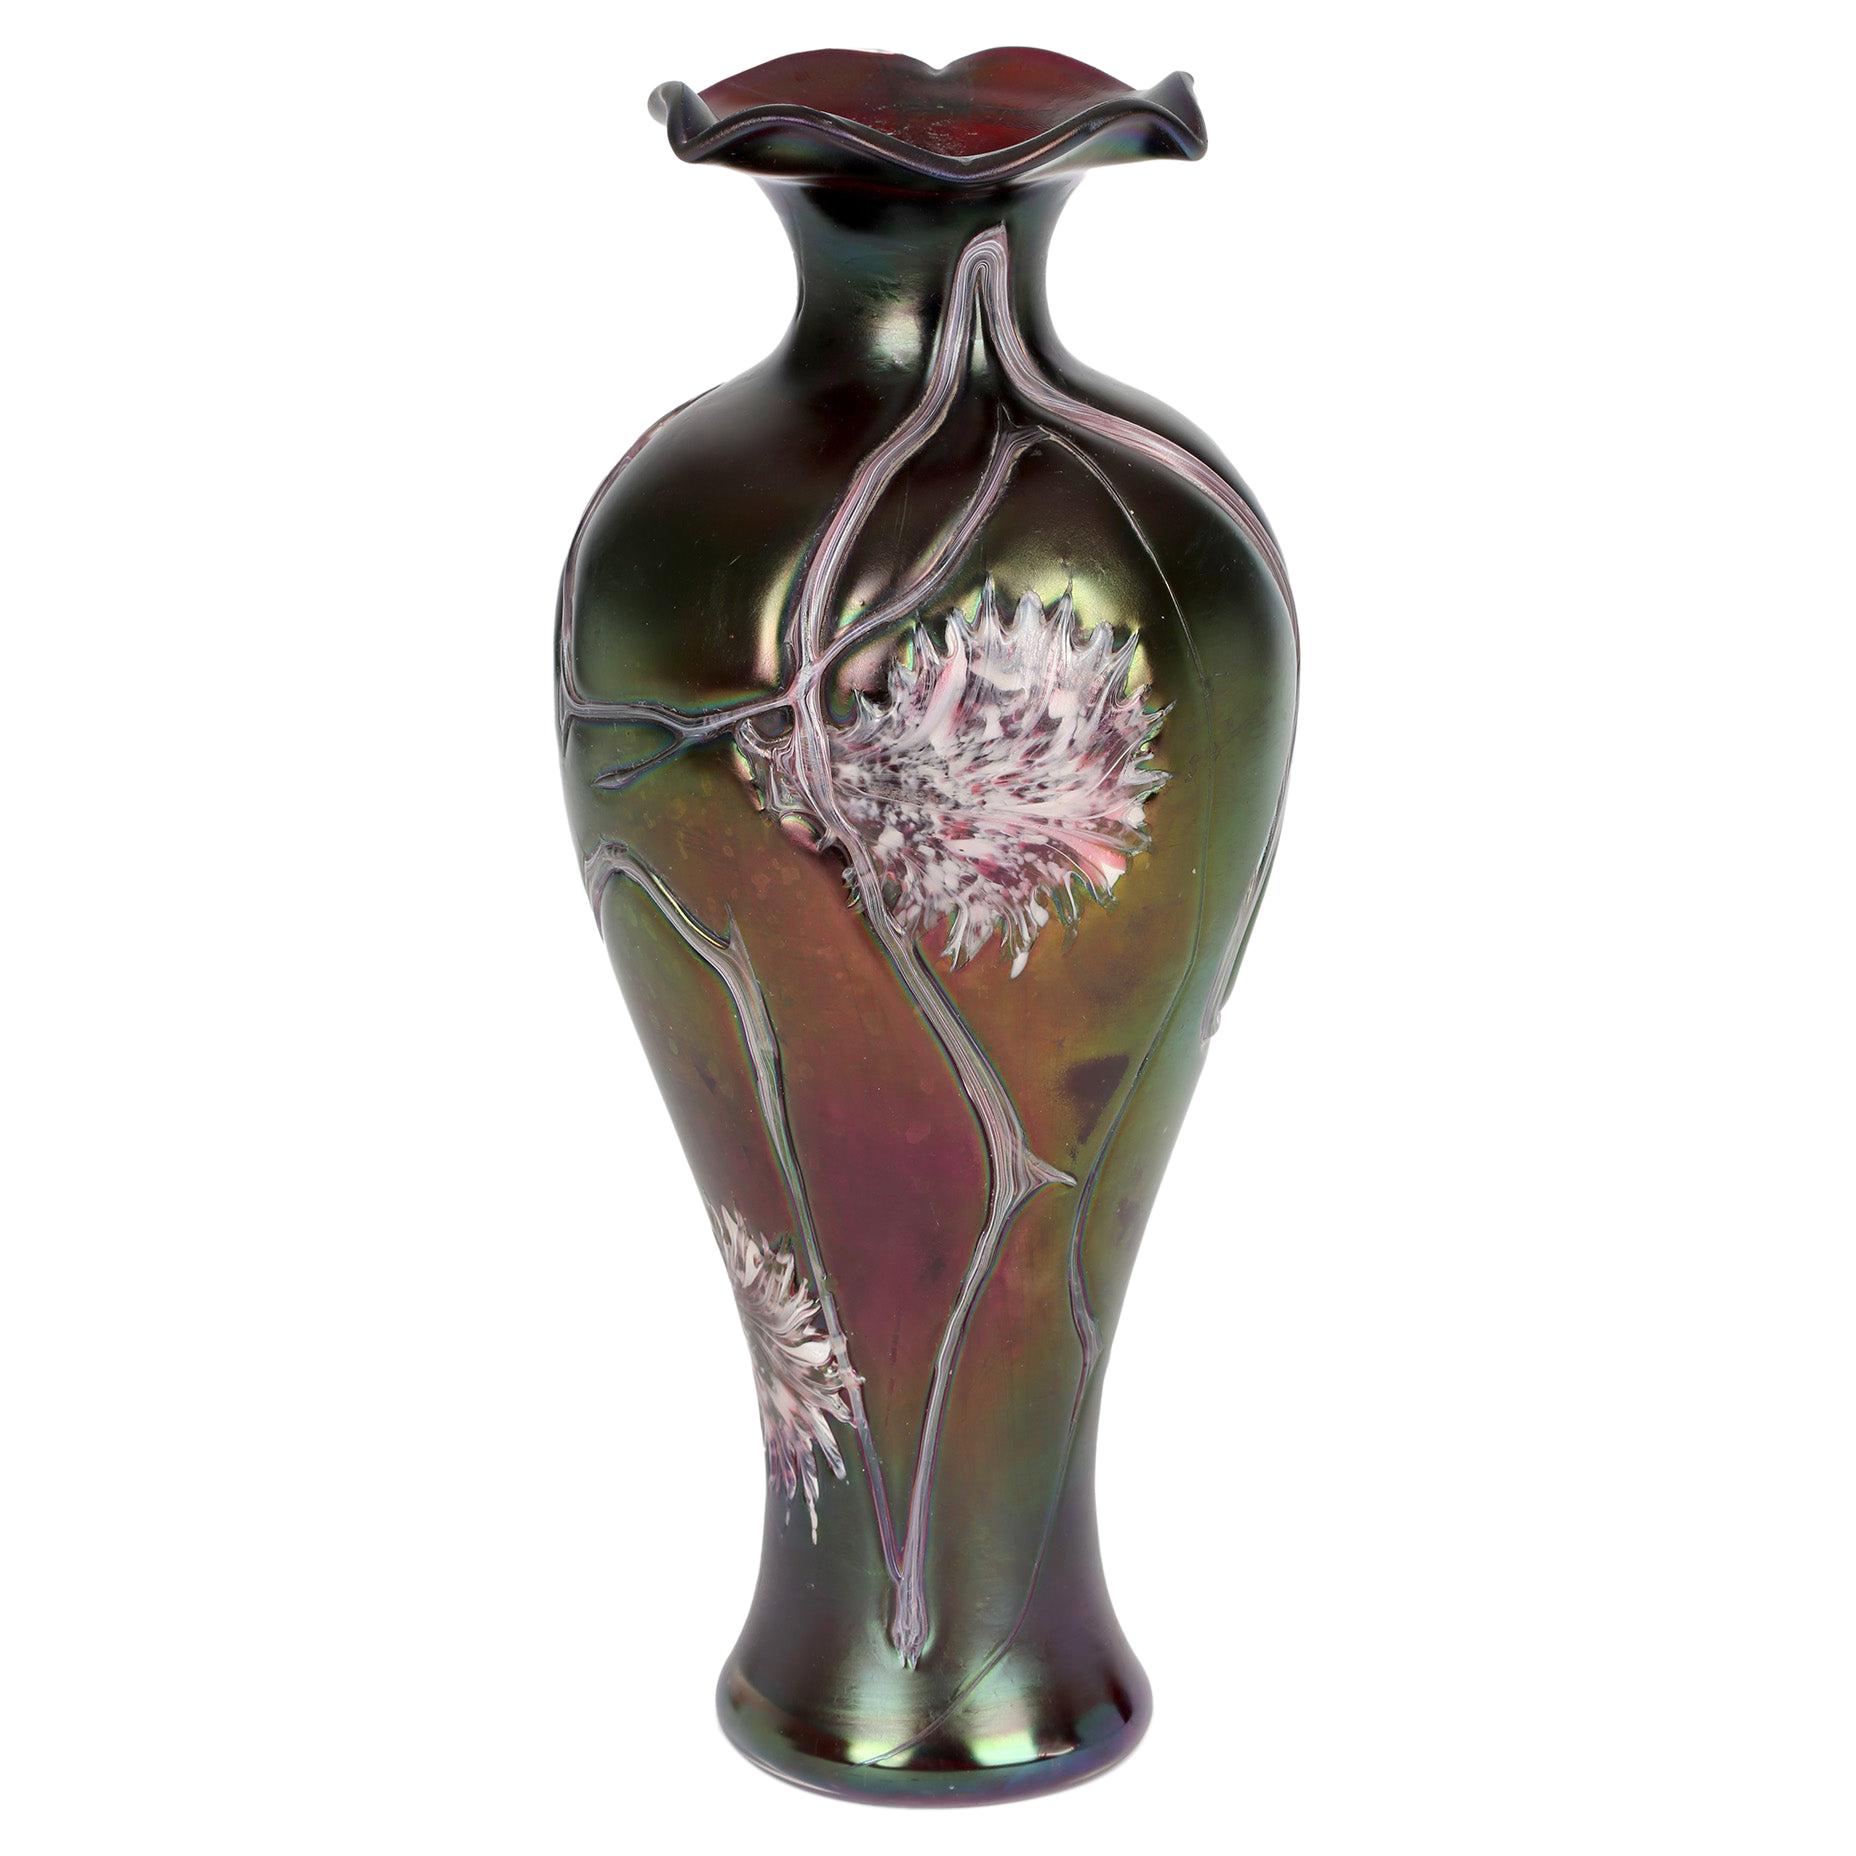 Pallme-Konig Bohemian Art Nouveau Iridescent Floral Patterned Glass Vase 